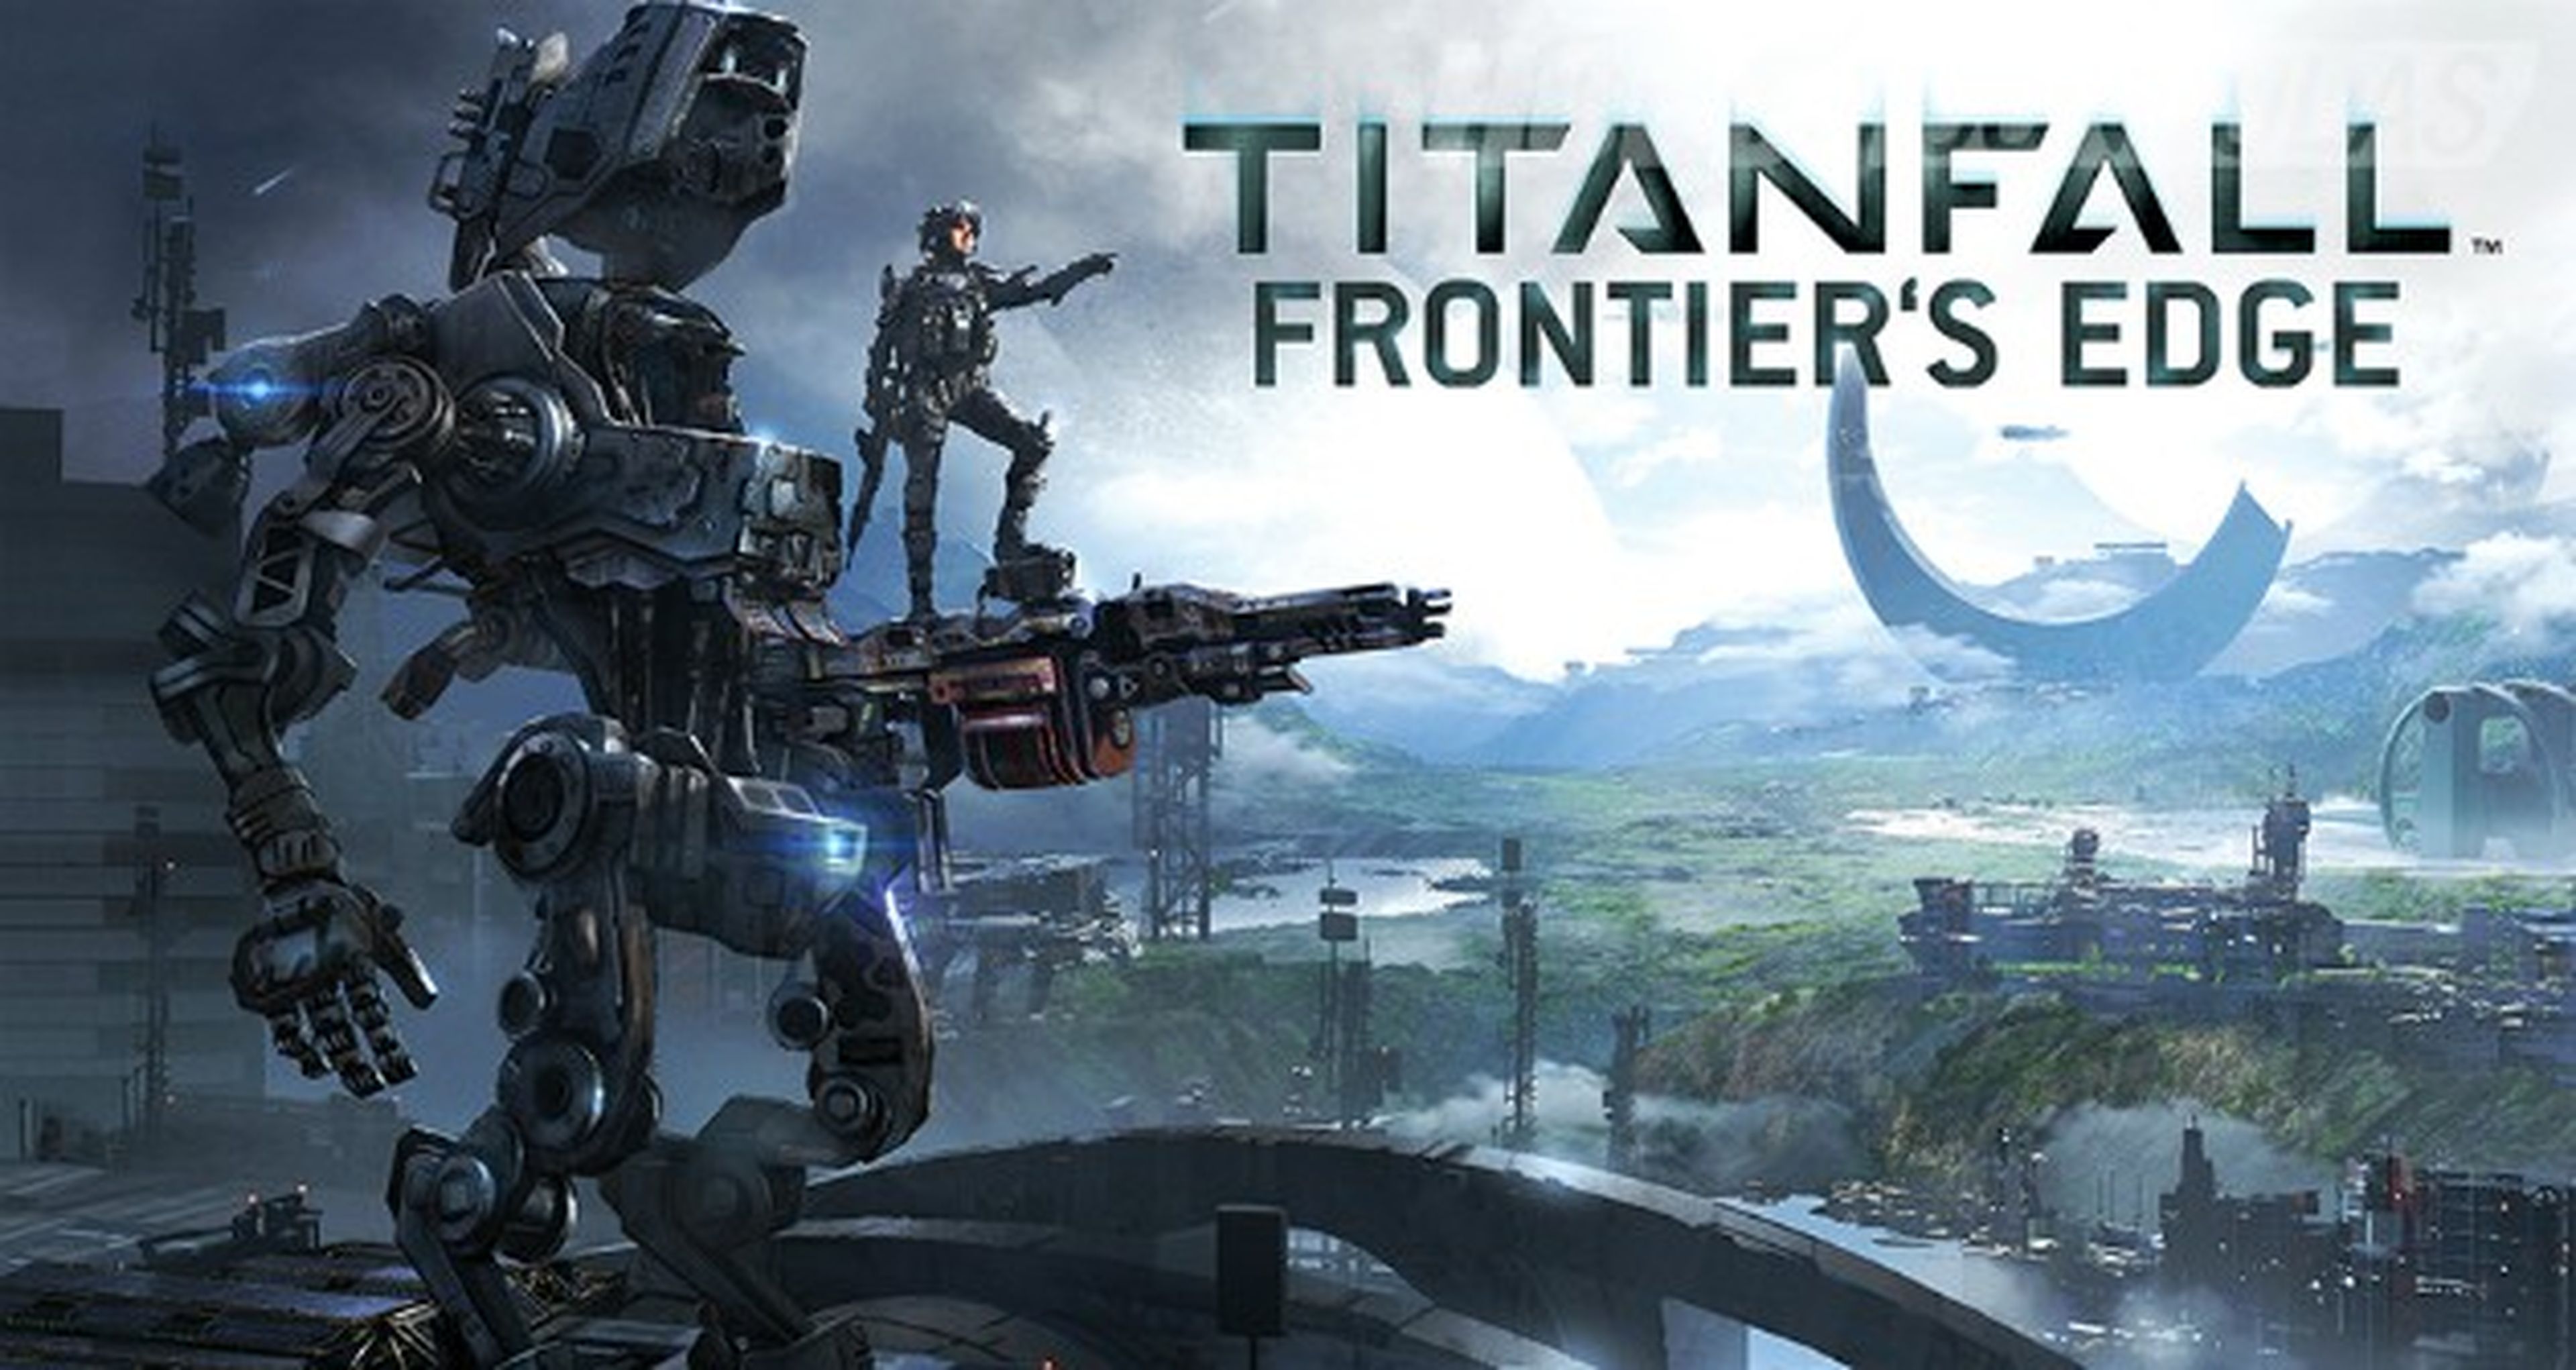 Imágenes de Frontier&#039;s Edge, el nuevo DLC para Titanfall